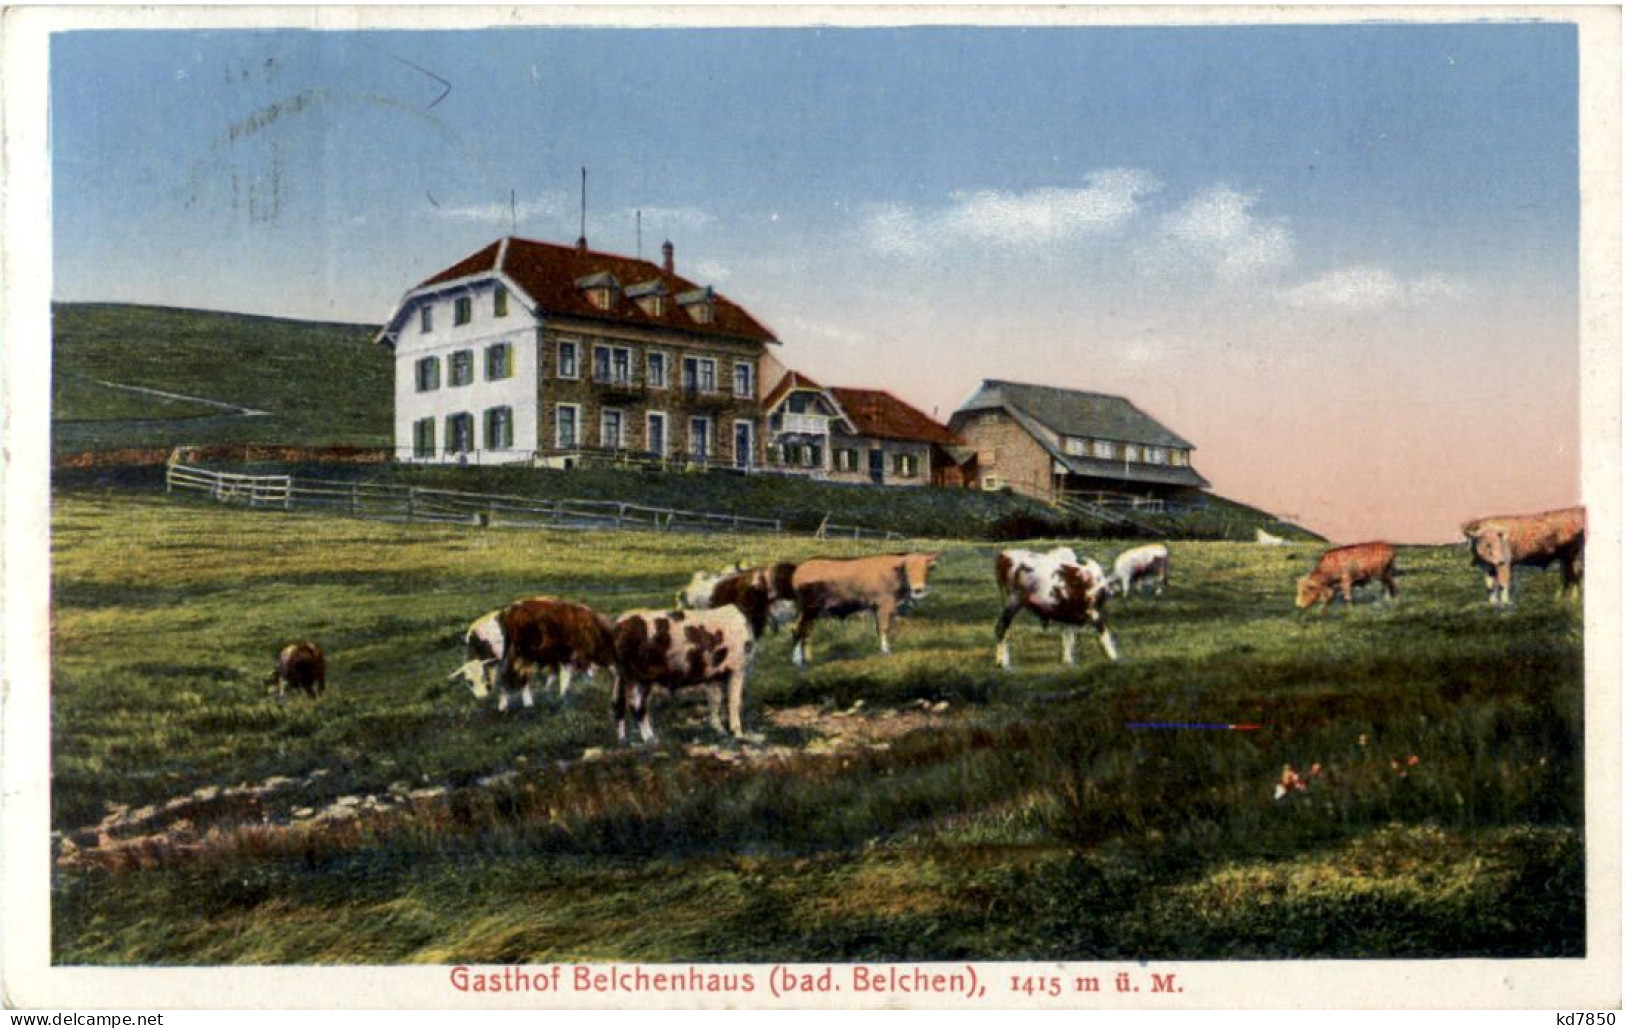 Gasthof Belchenhaus - Badenweiler